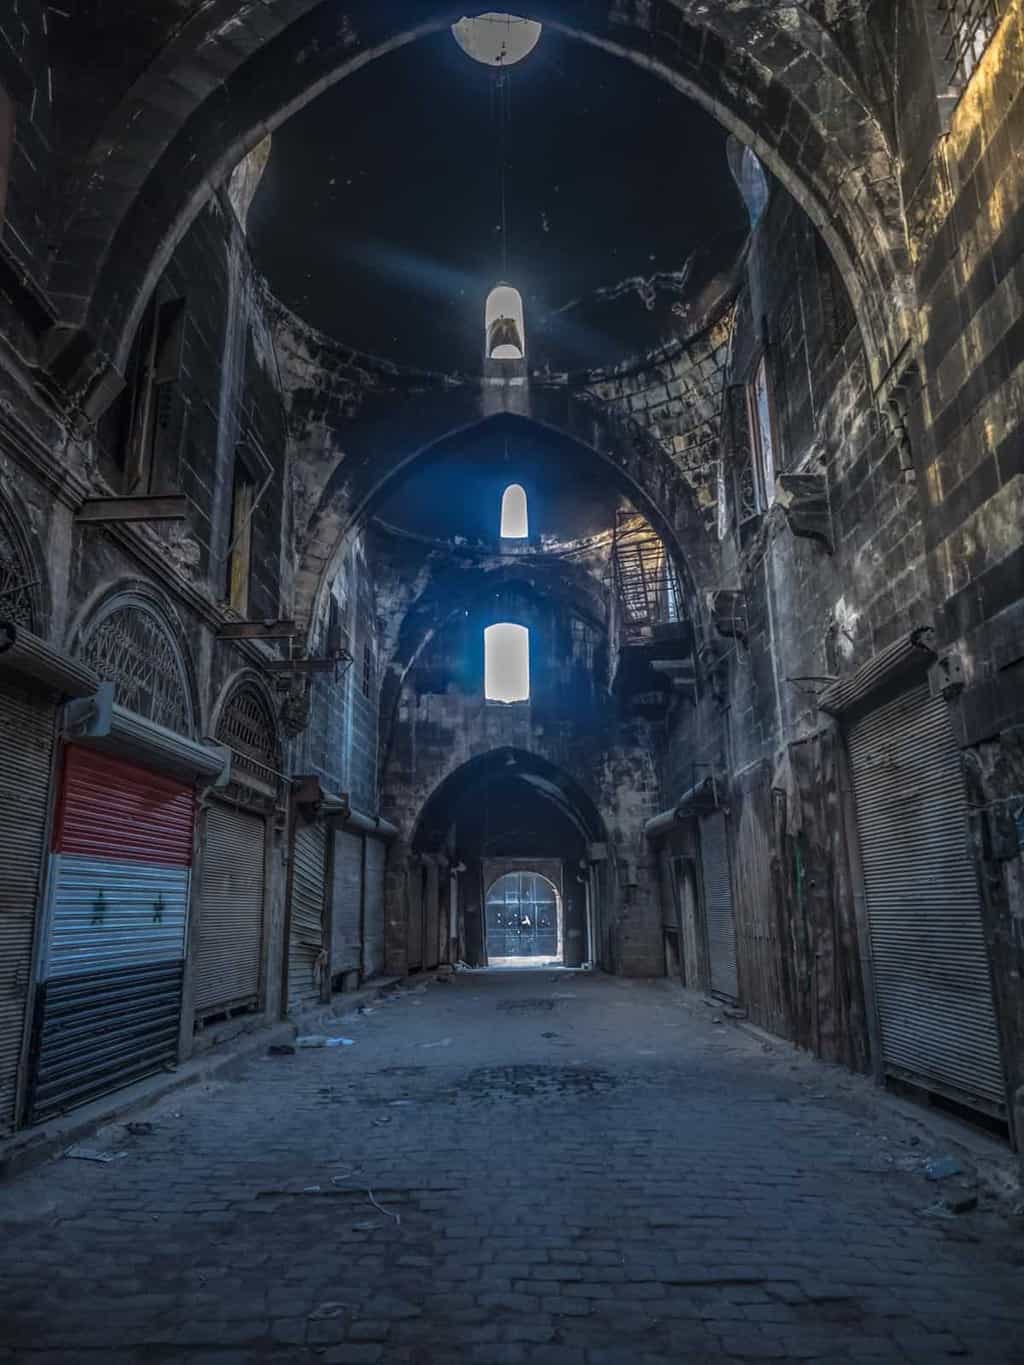 Aleppo souq in 2017